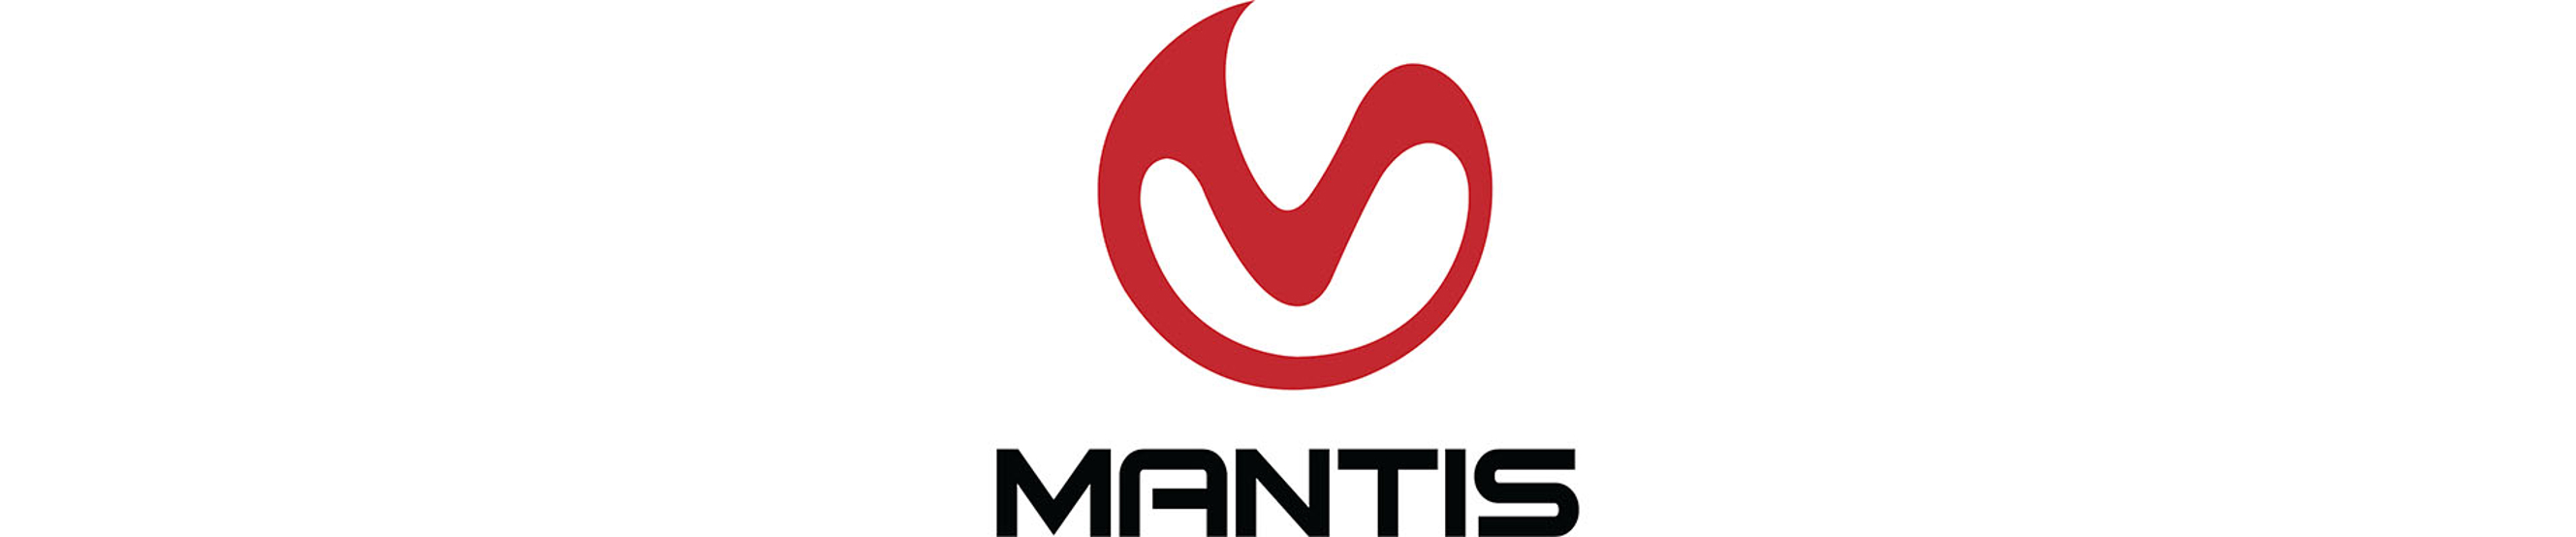 Mantis_Logo_Banner.jpg